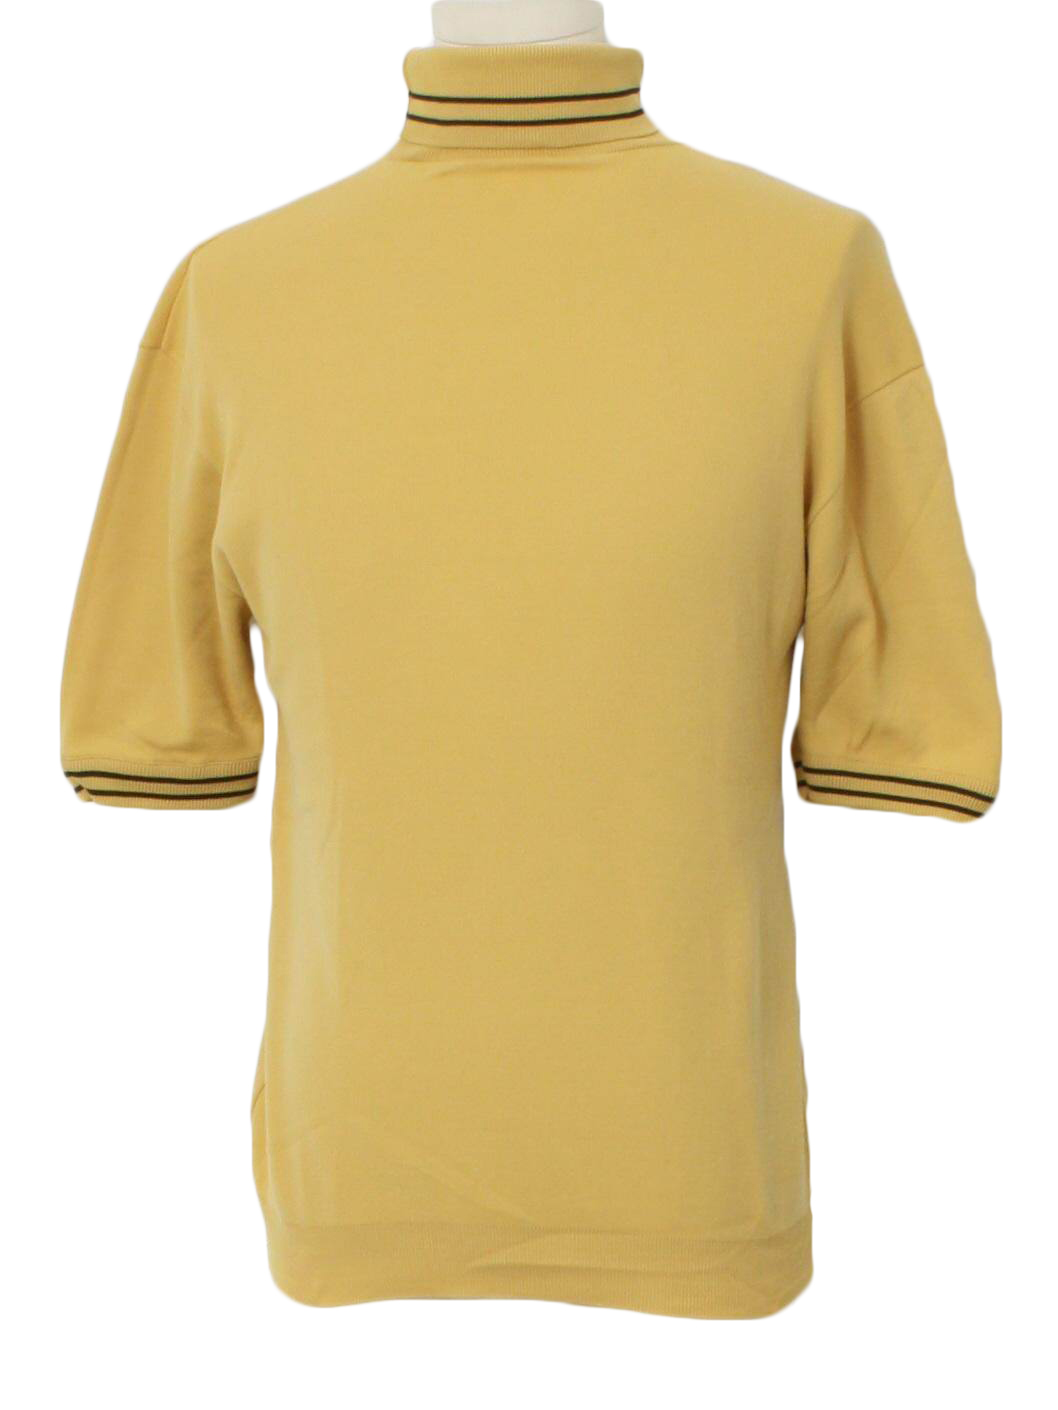 60s Retro Knit Shirt: 60s -Missing Label- Mens dijon cast tan ban lon ...